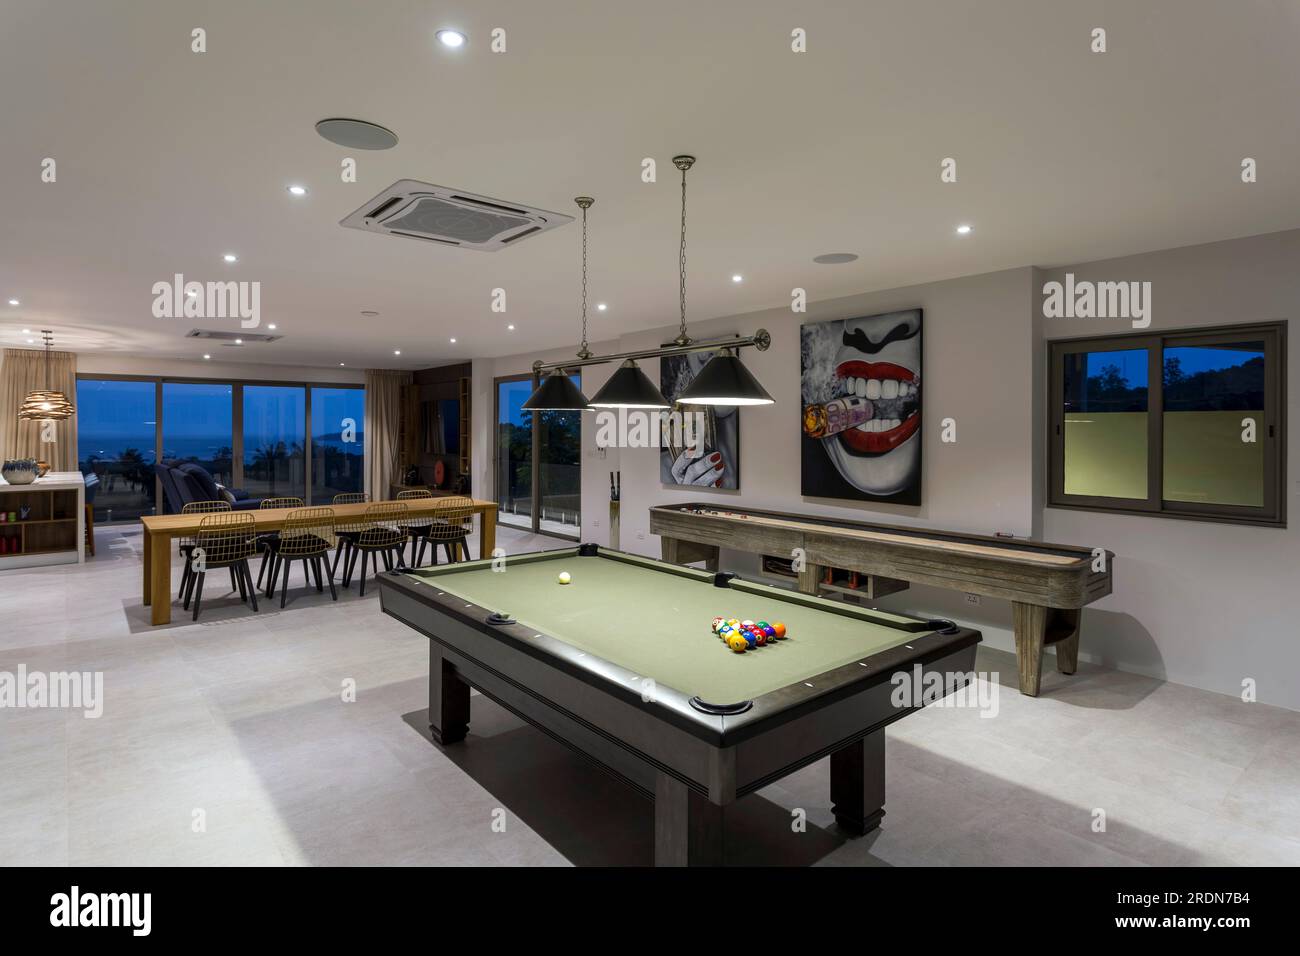 Koh Samui, Thaïlande - 19 février 2020 : une salle de jeux de loisirs résidentielle et une salle de gym à domicile dans le sous-sol d'une villa de luxe. Banque D'Images